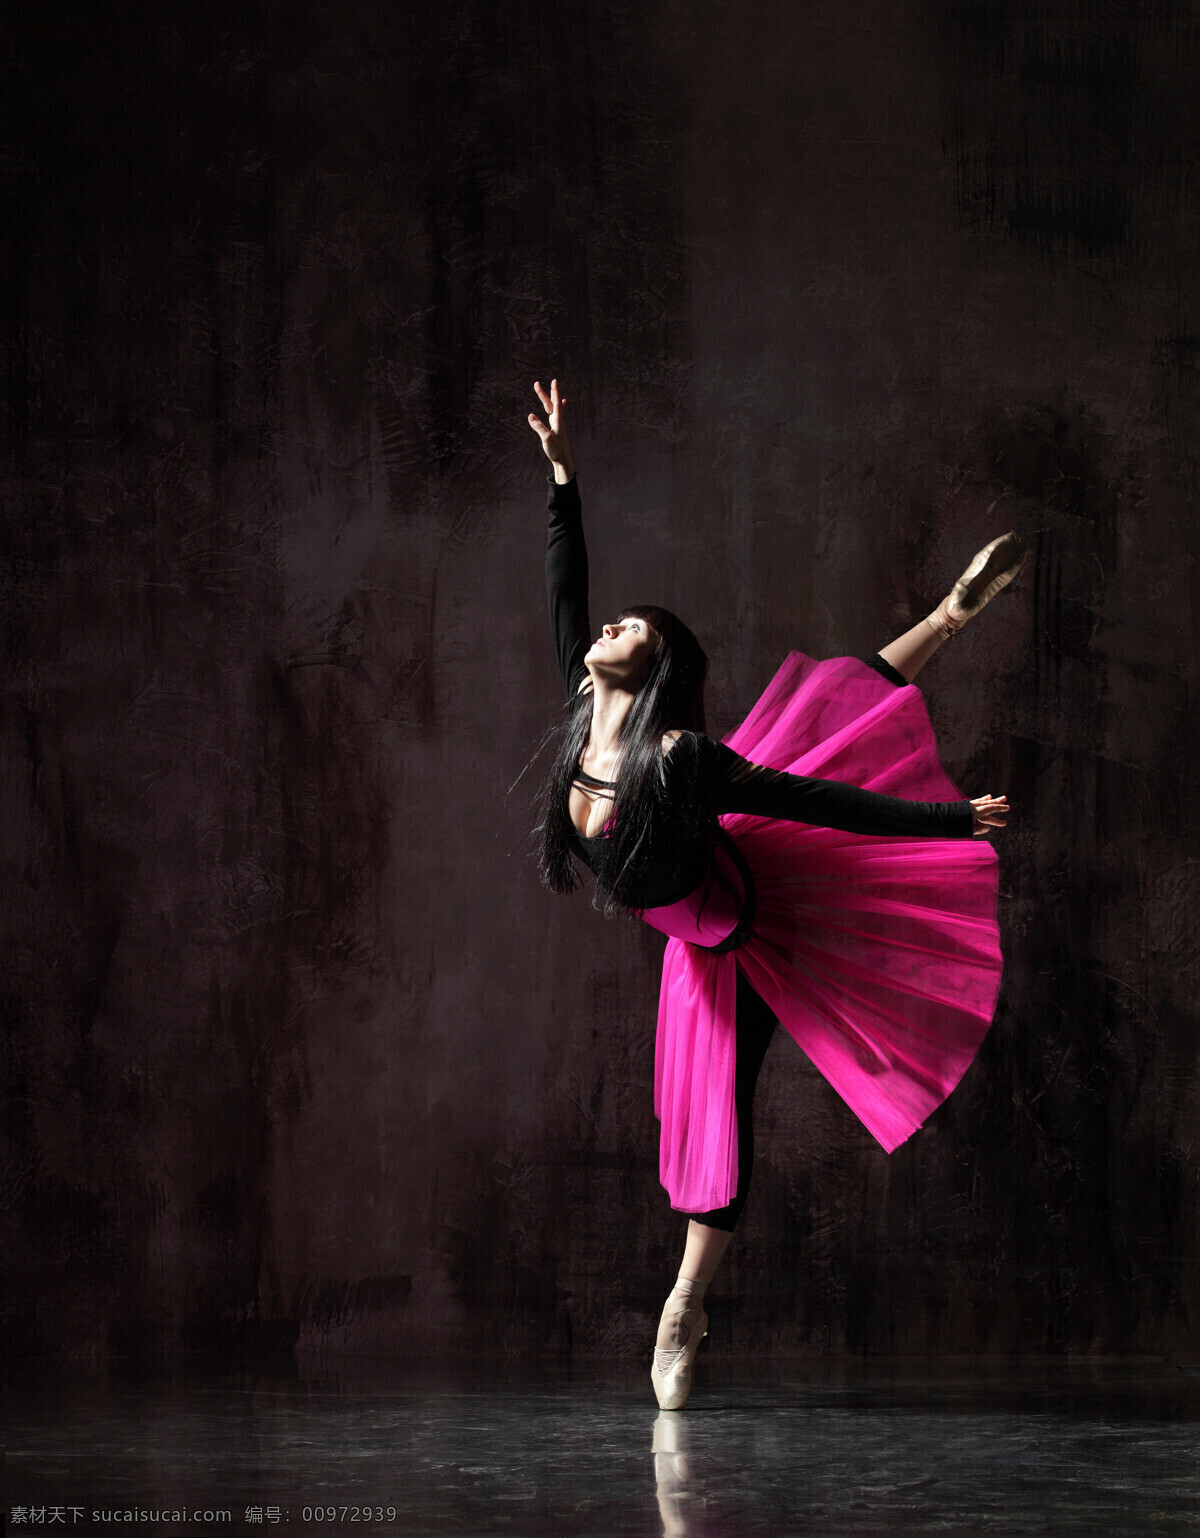 跳舞 女人 红 芭蕾 女性女人 人物图库